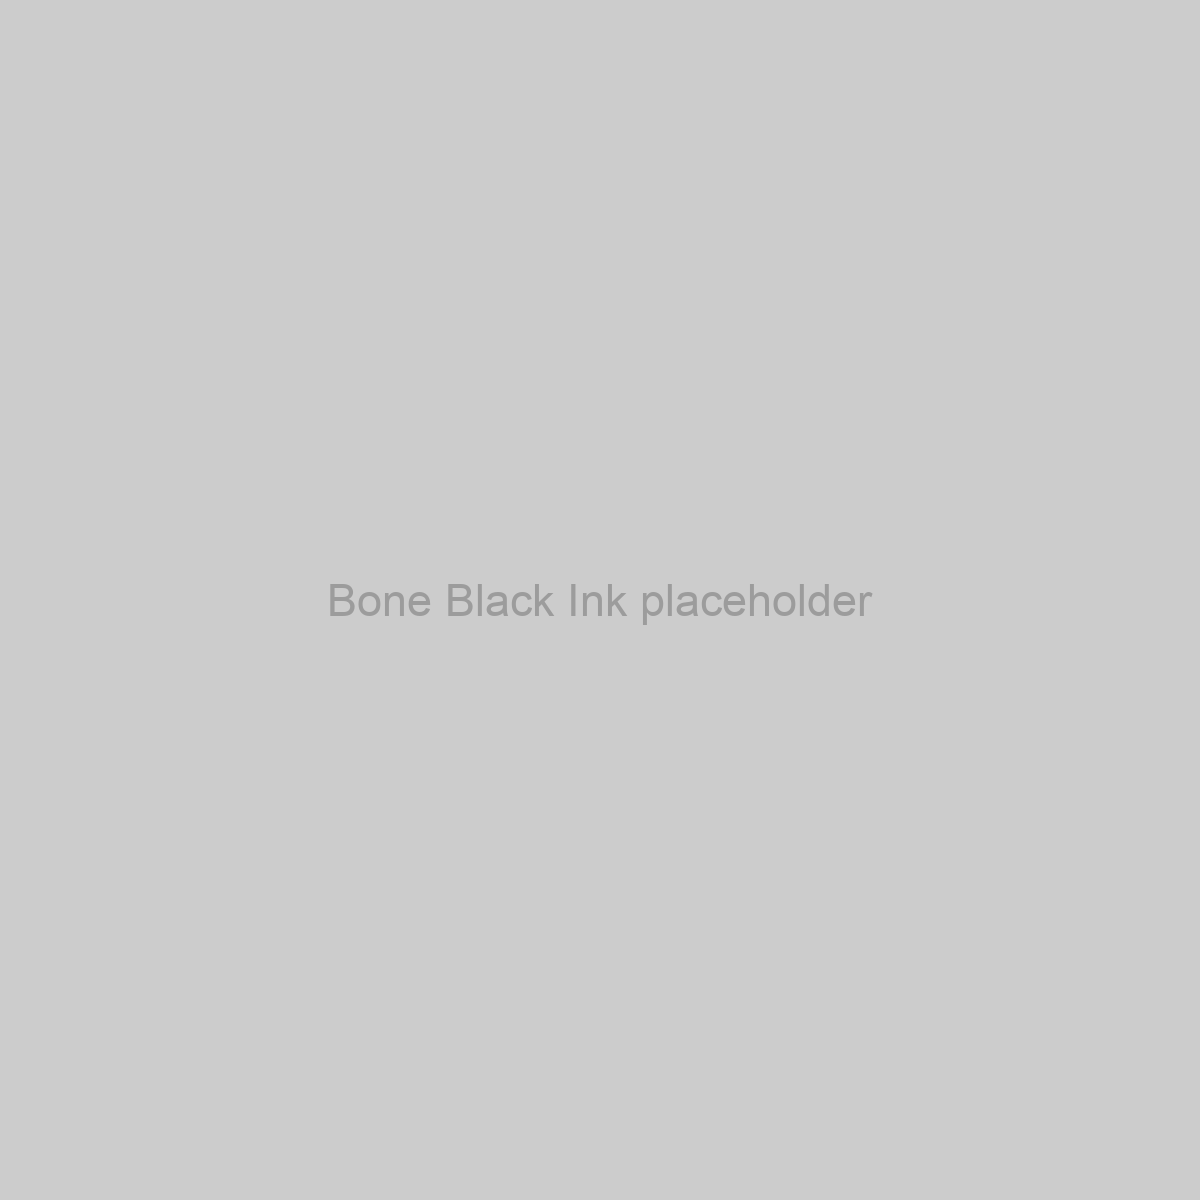 Bone Black Ink Placeholder Image